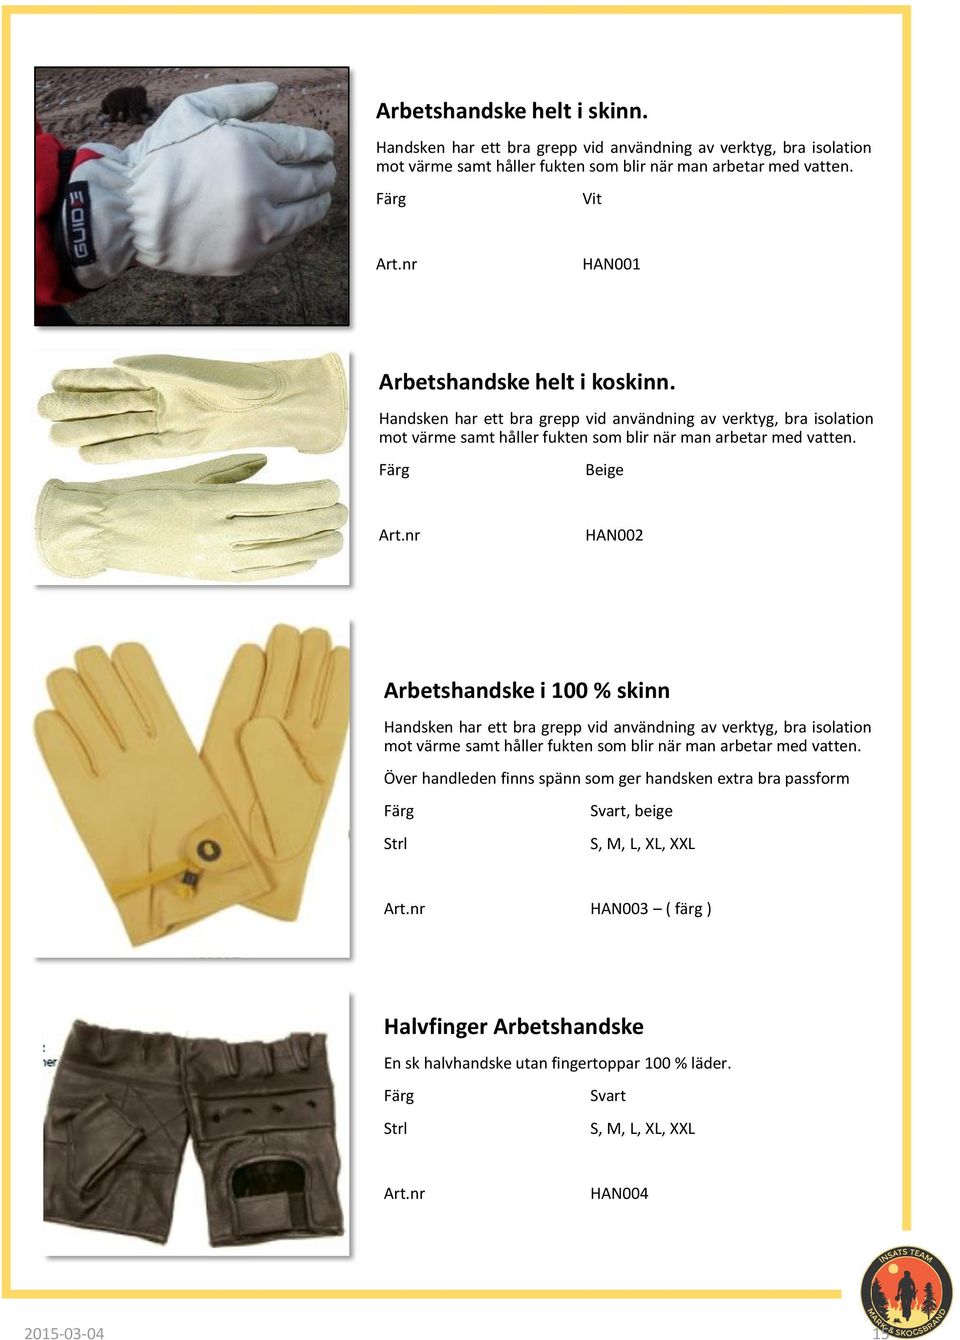 Beige HAN002 Arbetshandske i 100 % skinn Handsken har ett bra grepp vid användning av verktyg, bra isolation mot värme samt håller fukten som blir när man arbetar med vatten.